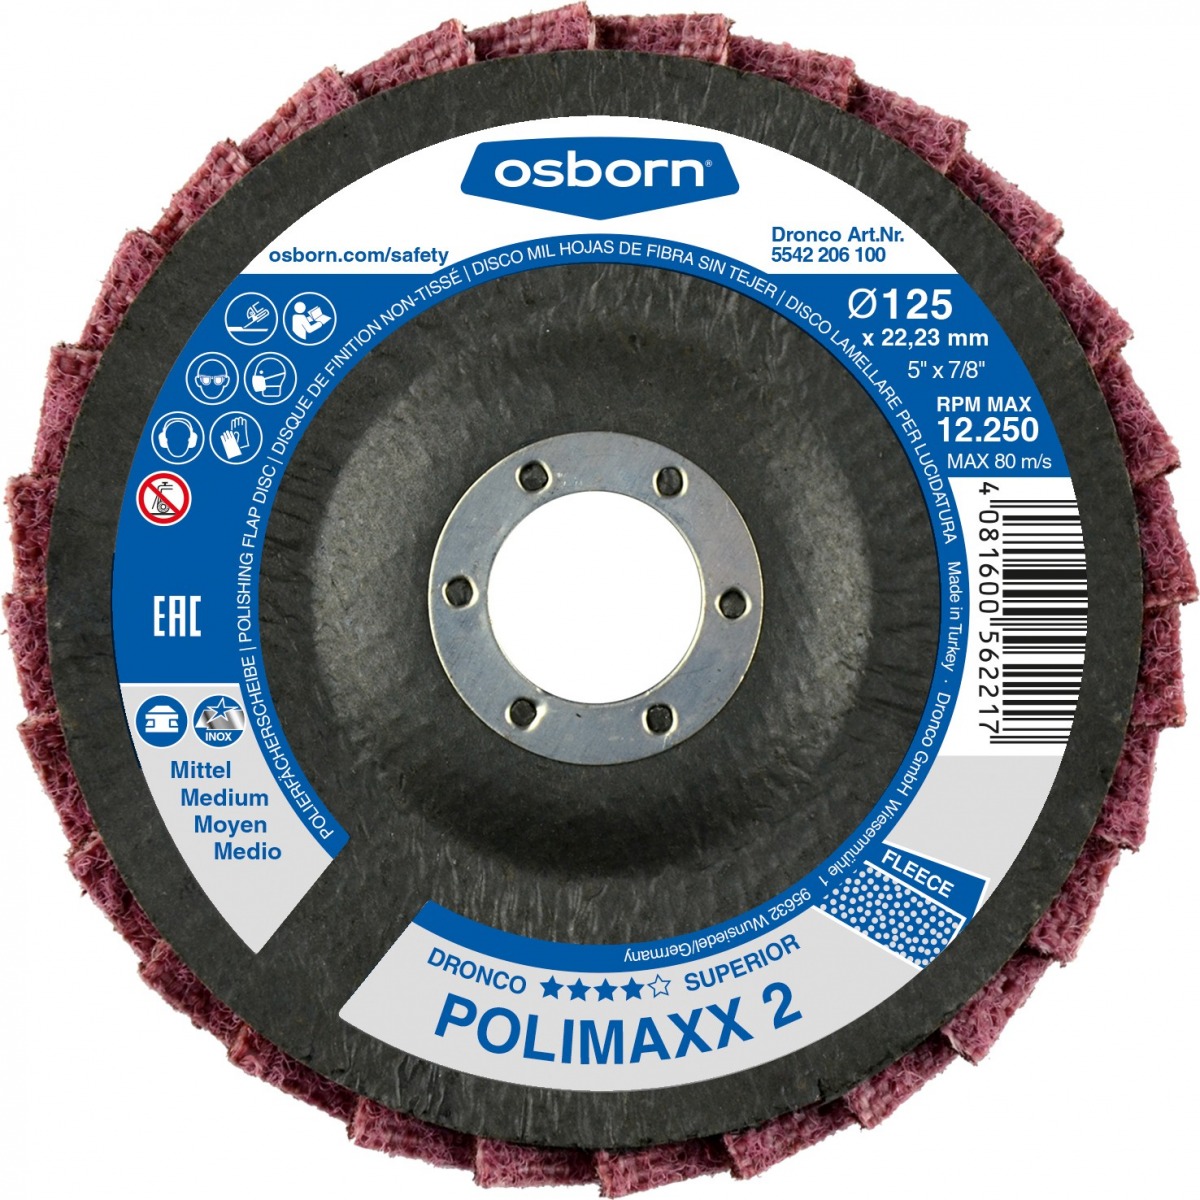 Discos de láminas abrasivas fibra sin tejer de gran medio Polimaxx 2 DRO-5541206100 | DISCOS DE CORTE